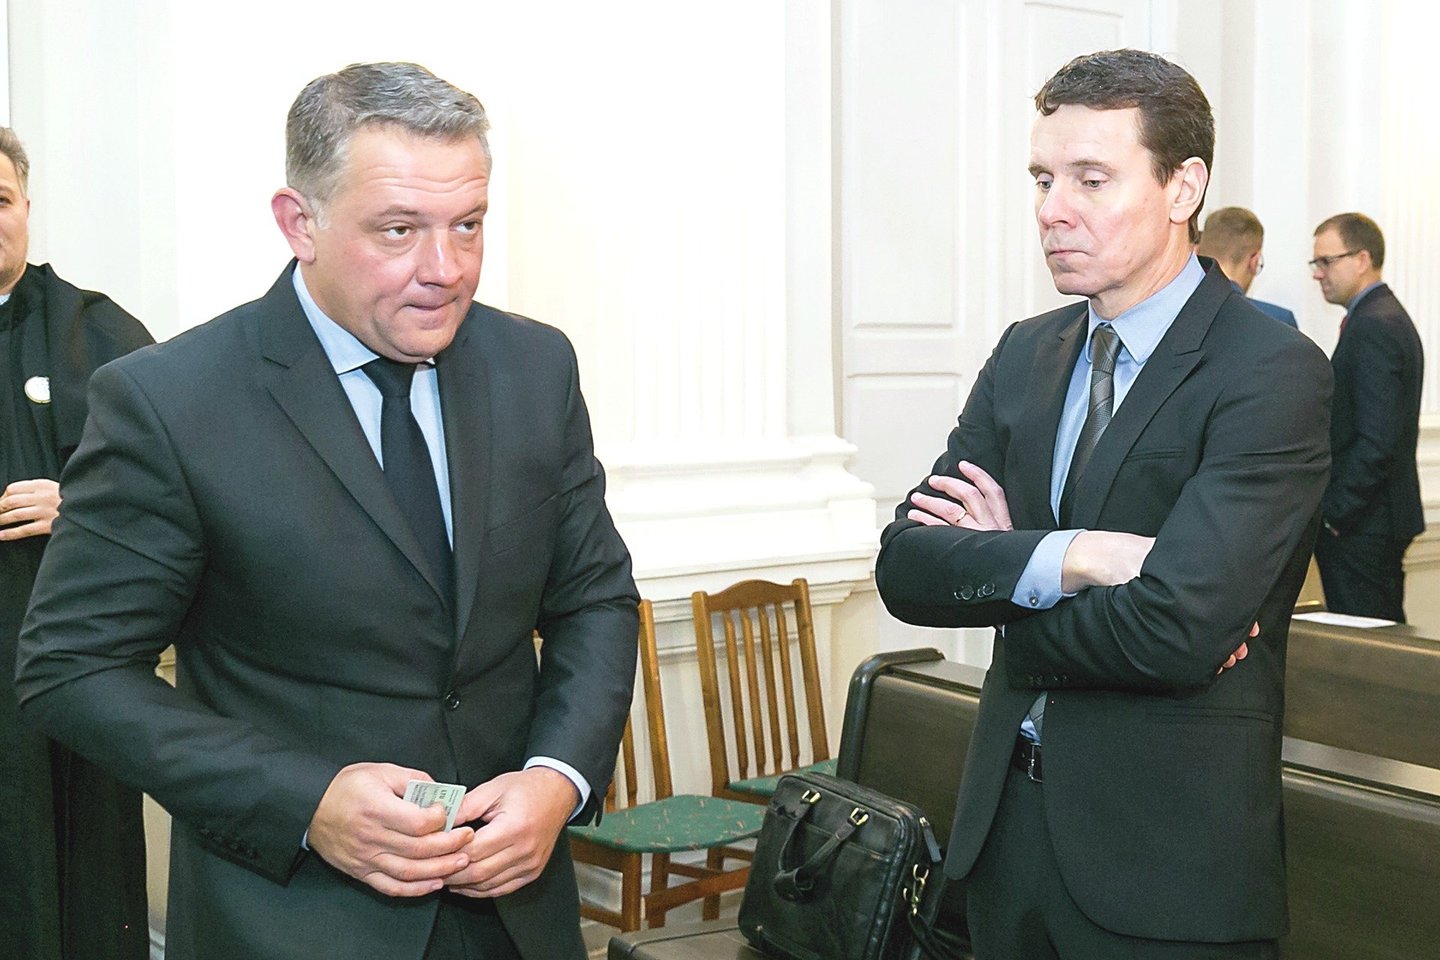 Politinės korupcijos byloje teisiami E.Masiulis (kairėje) ir R.Kurlianskis skirtingai sureagavo, kad atrodo panašūs į gėjus.